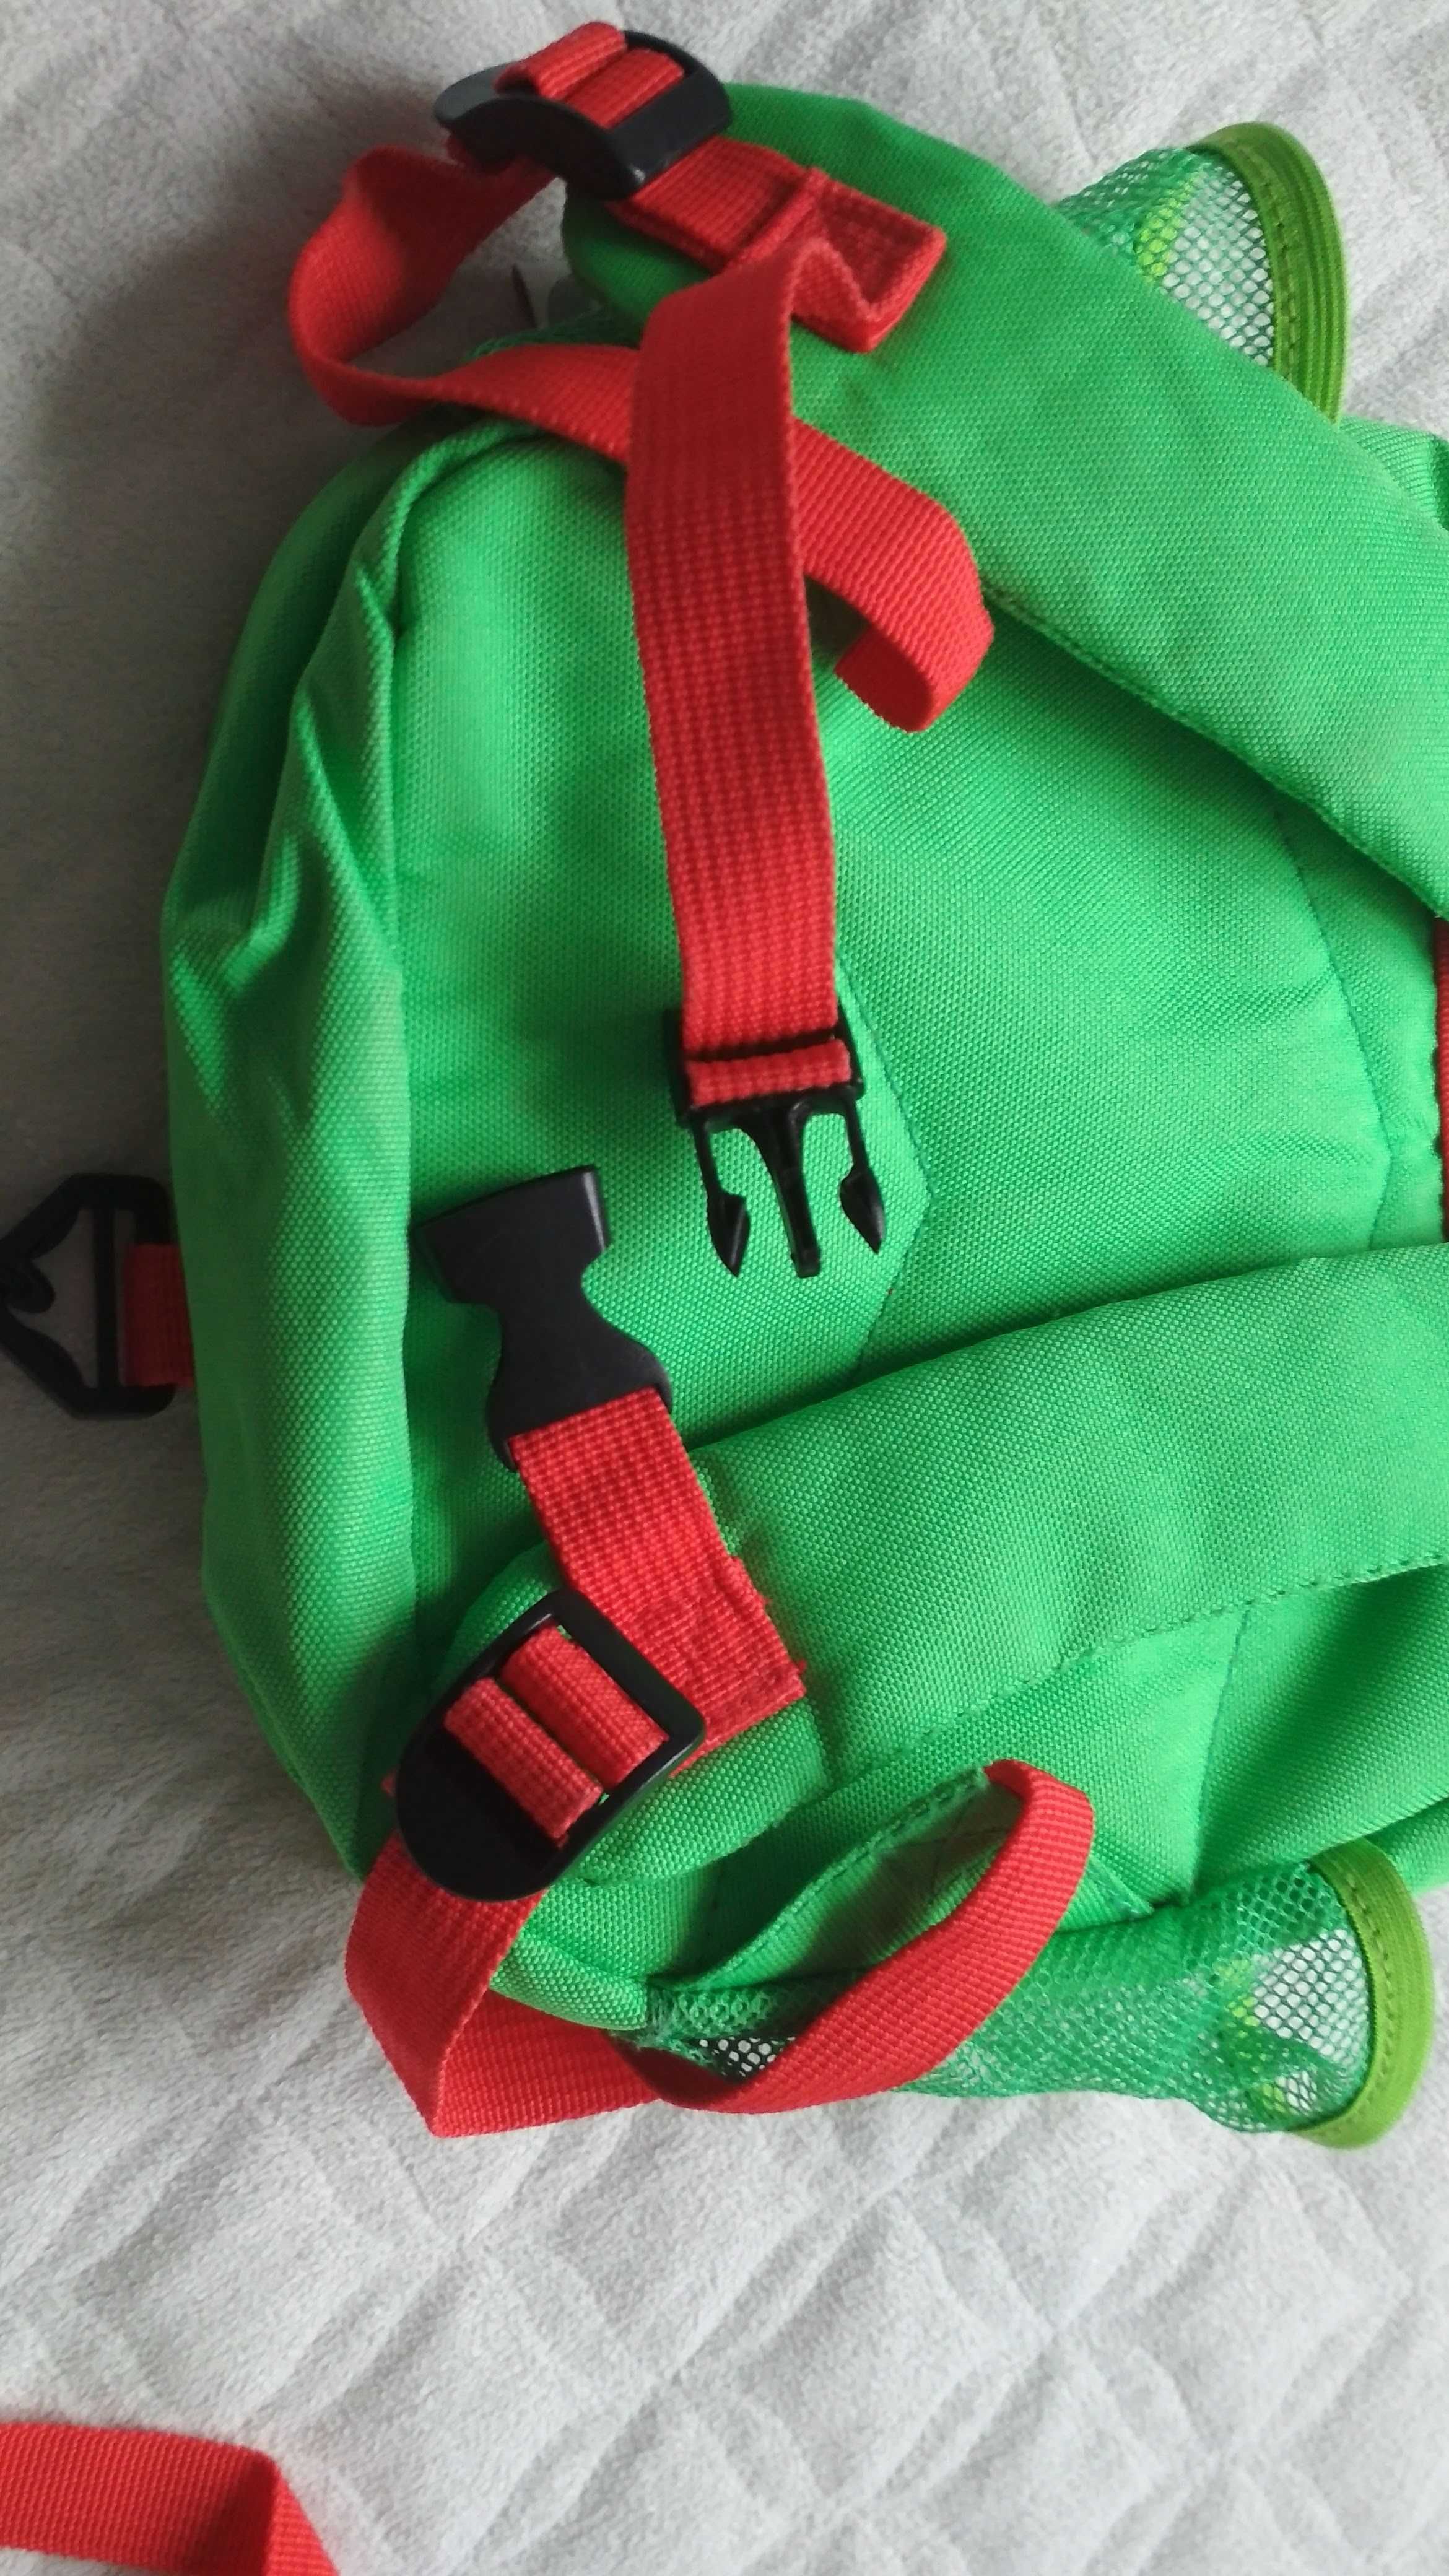 Plecak Smiki dla przedszkolaka